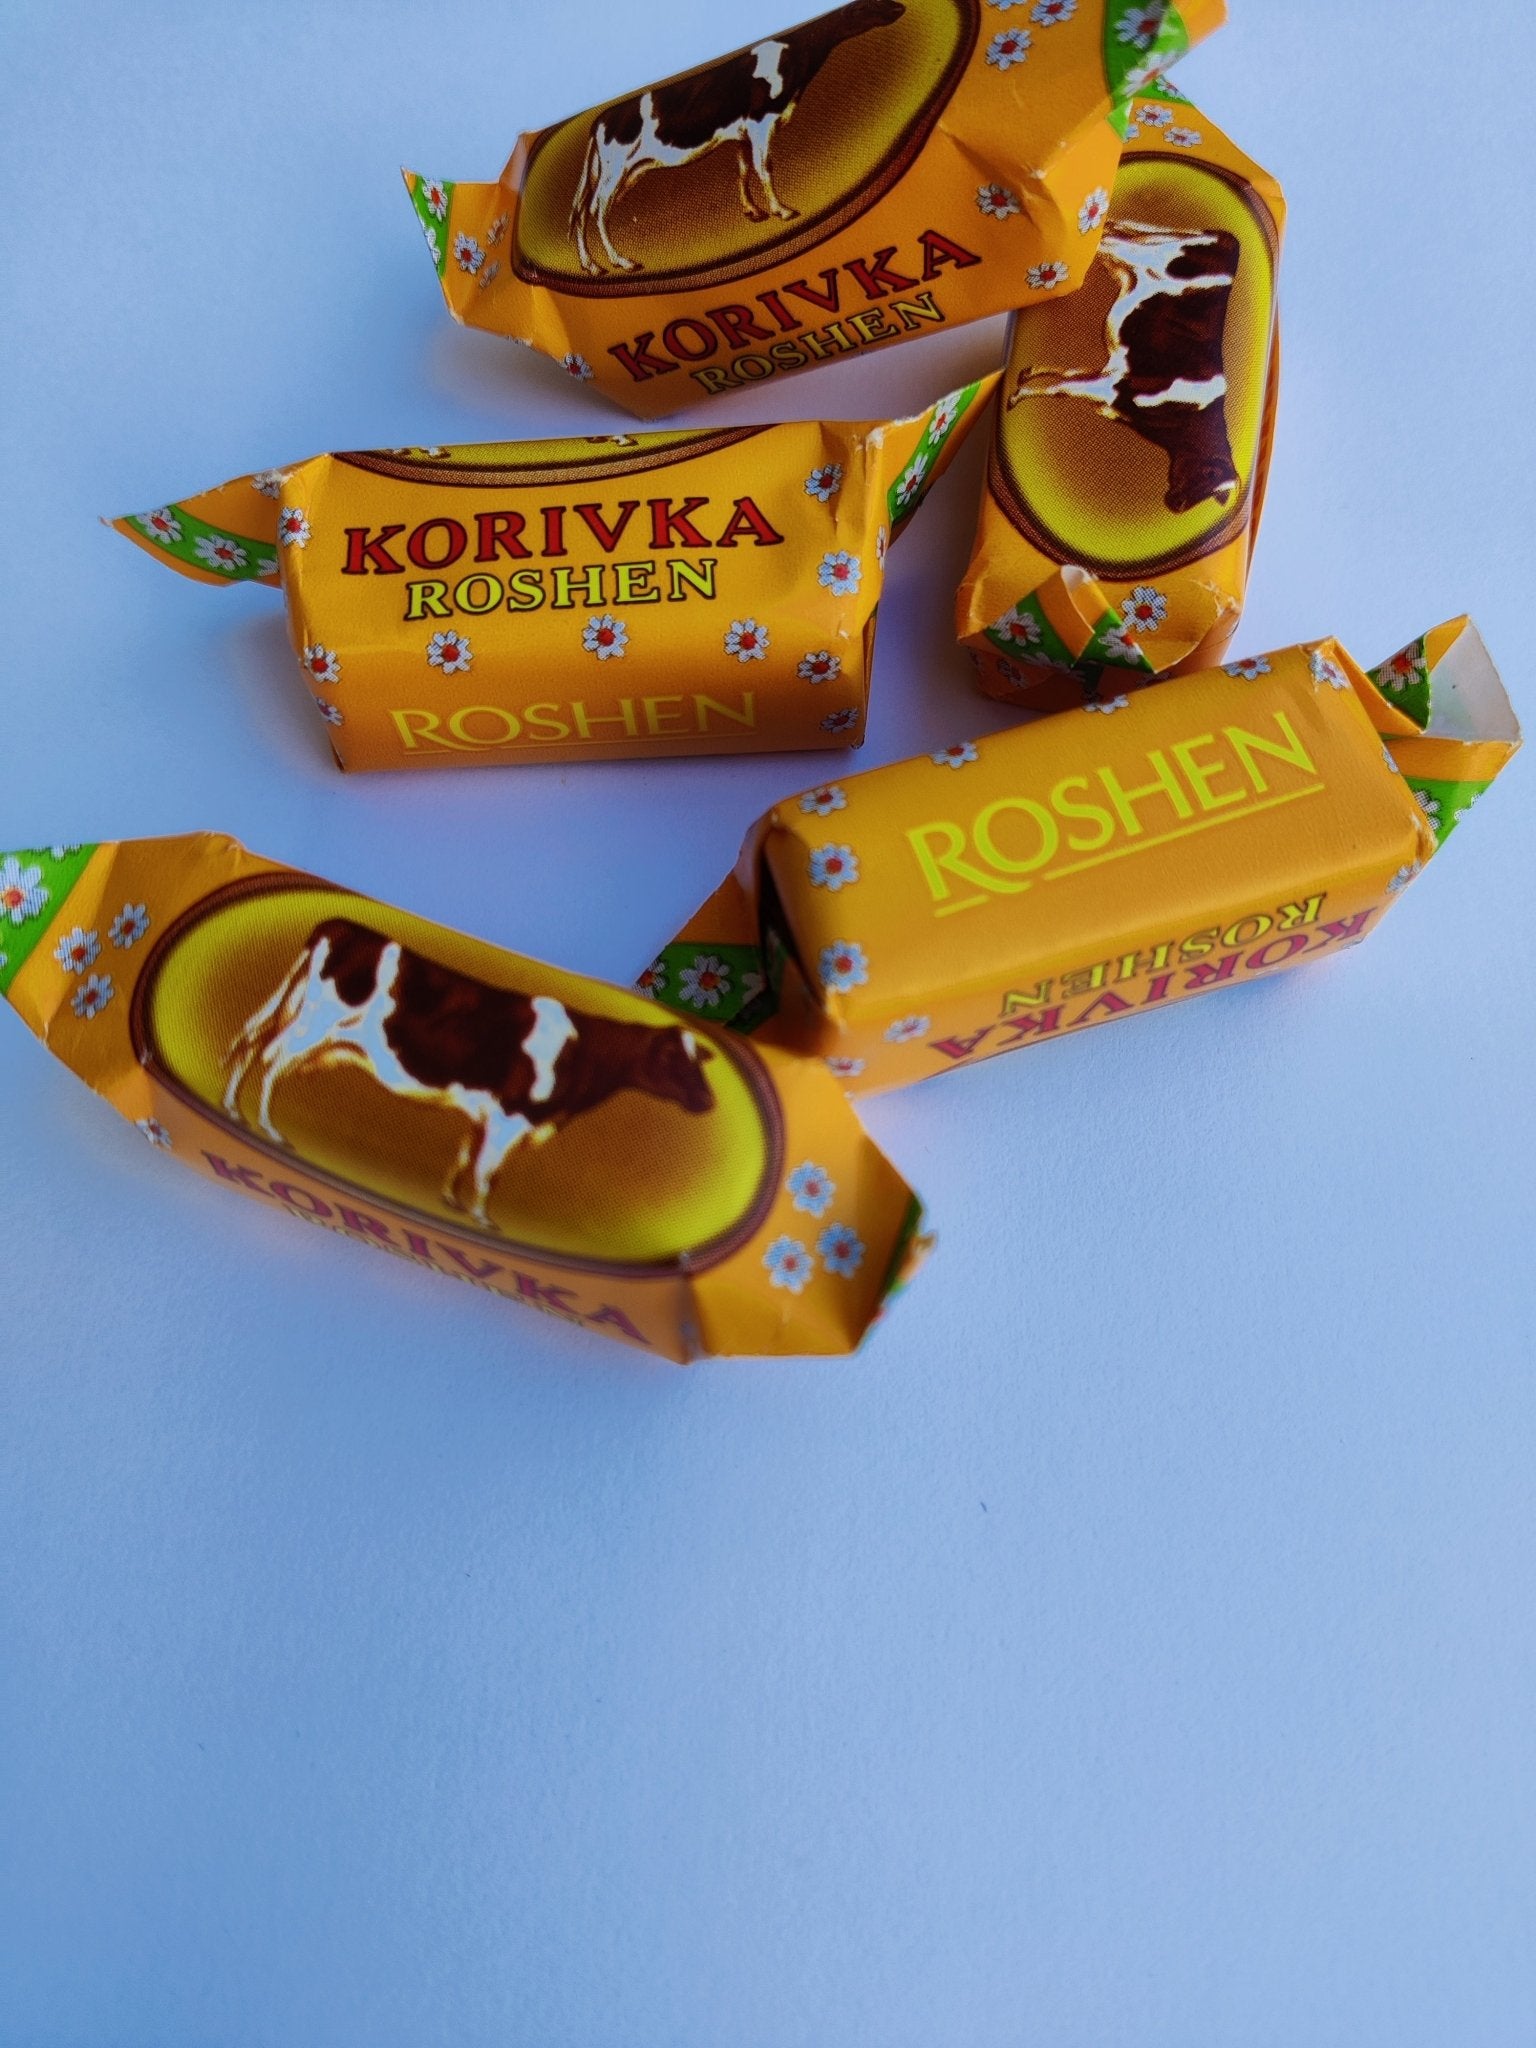 Roshen Korivka. Milk fudge - ChocolandBoutique